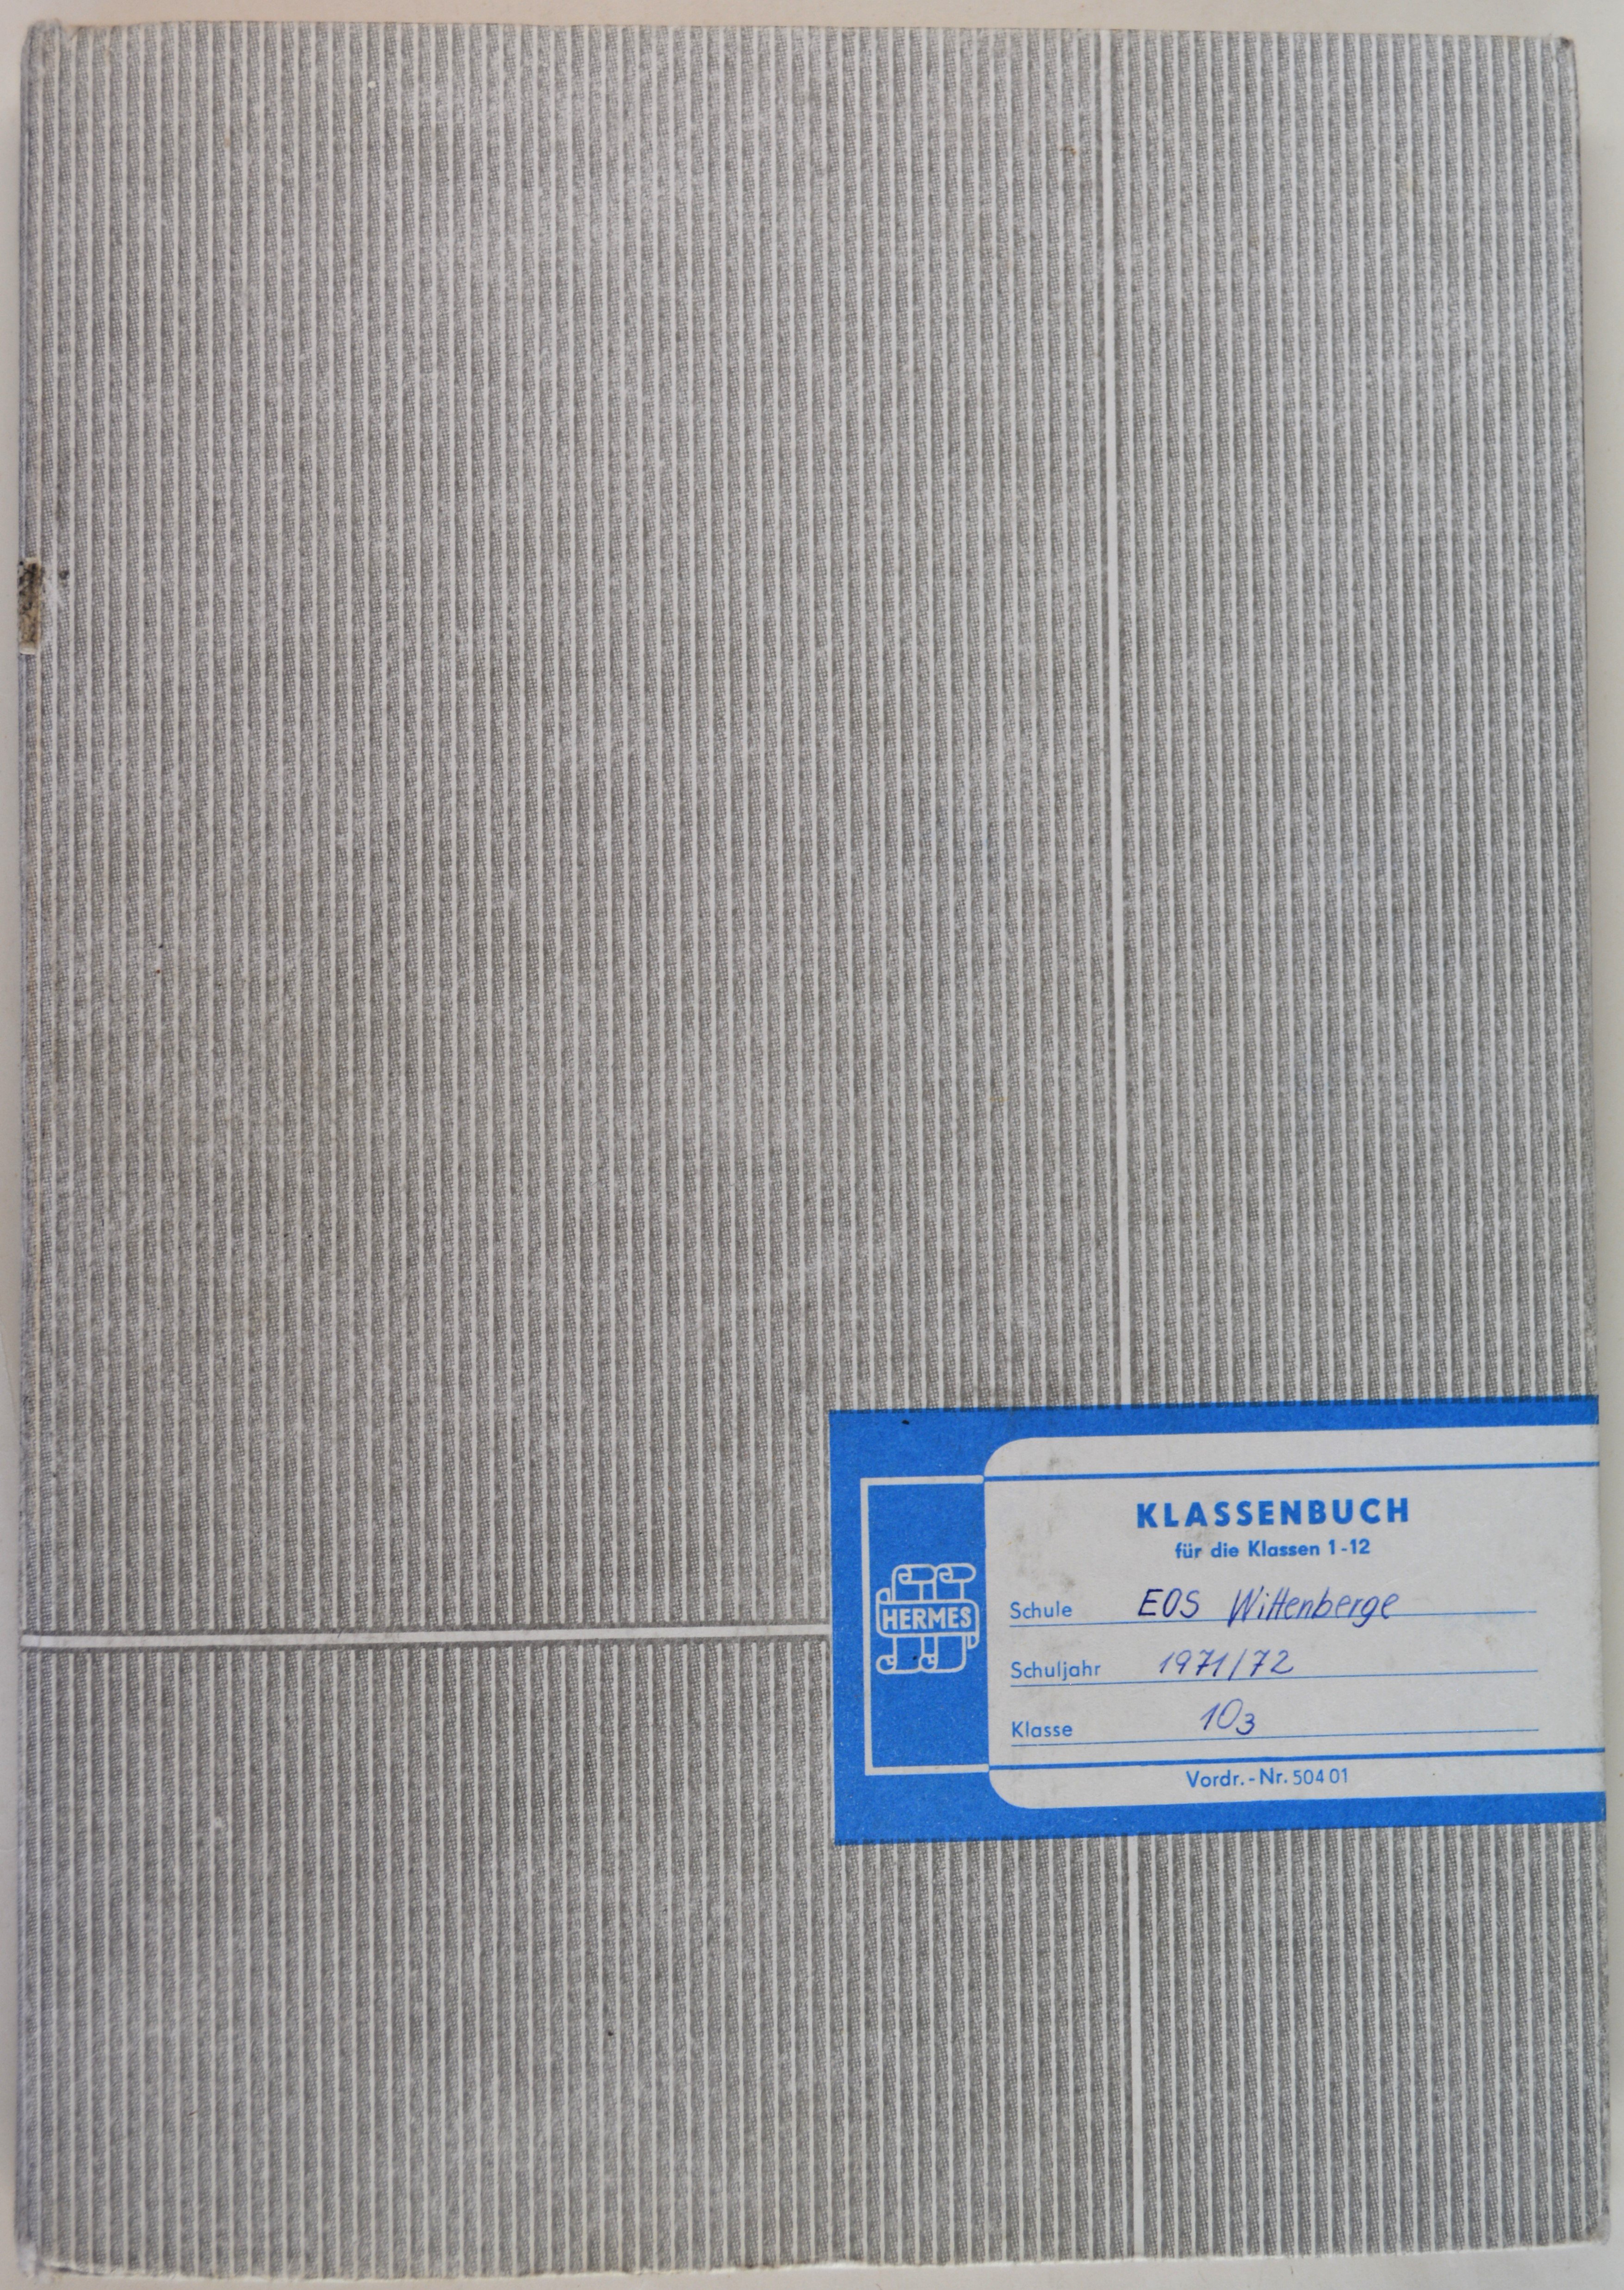 Klassenbuch der Klasse 10,3 der Erweiterten Oberschule Wittenberge (DDR Geschichtsmuseum im Dokumentationszentrum Perleberg CC BY-SA)